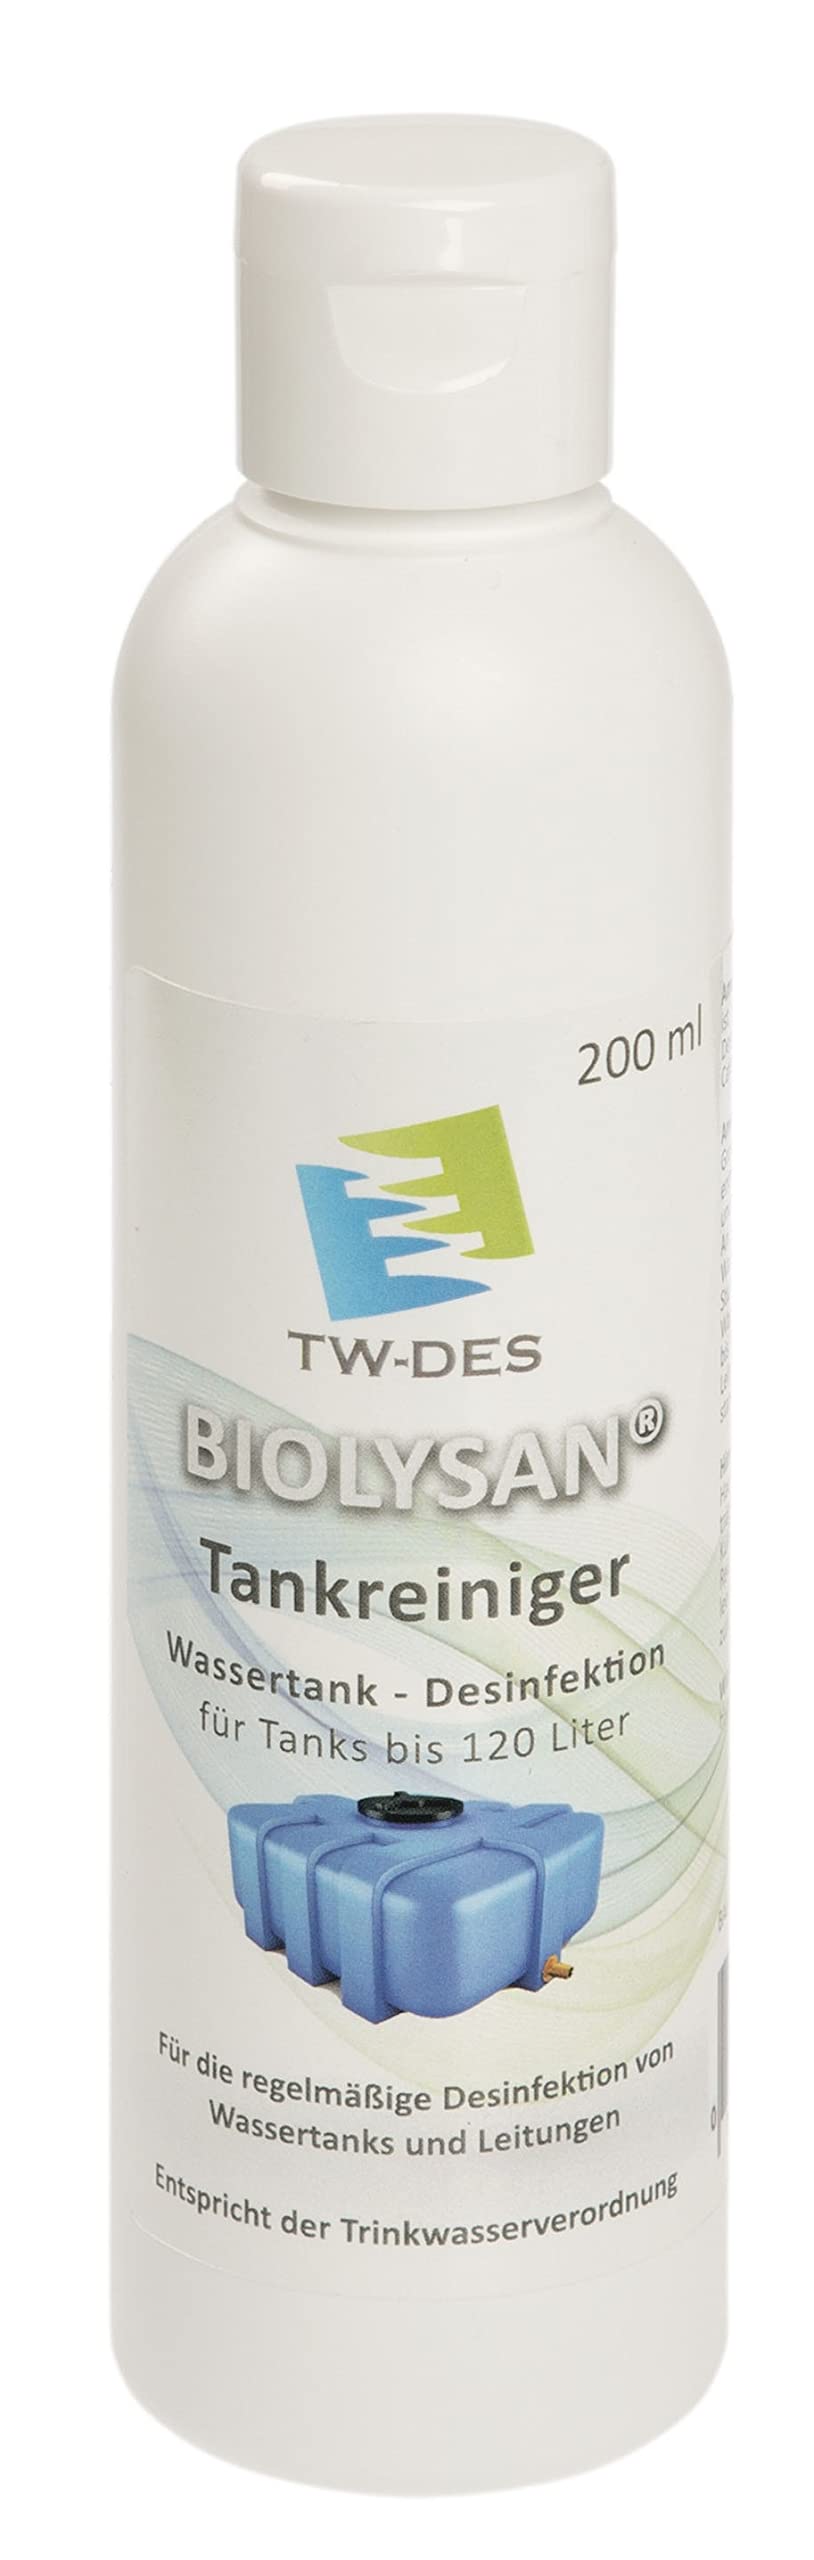 TW-DES BIOLYSAN Tankreiniger zur Tank- und Leitungsdesinfektion bis 120l Tanks, entspricht der Trinkwasserverordnung, für Wohnmobil Caravan Boot, Made in Germany von BIOLYSAN